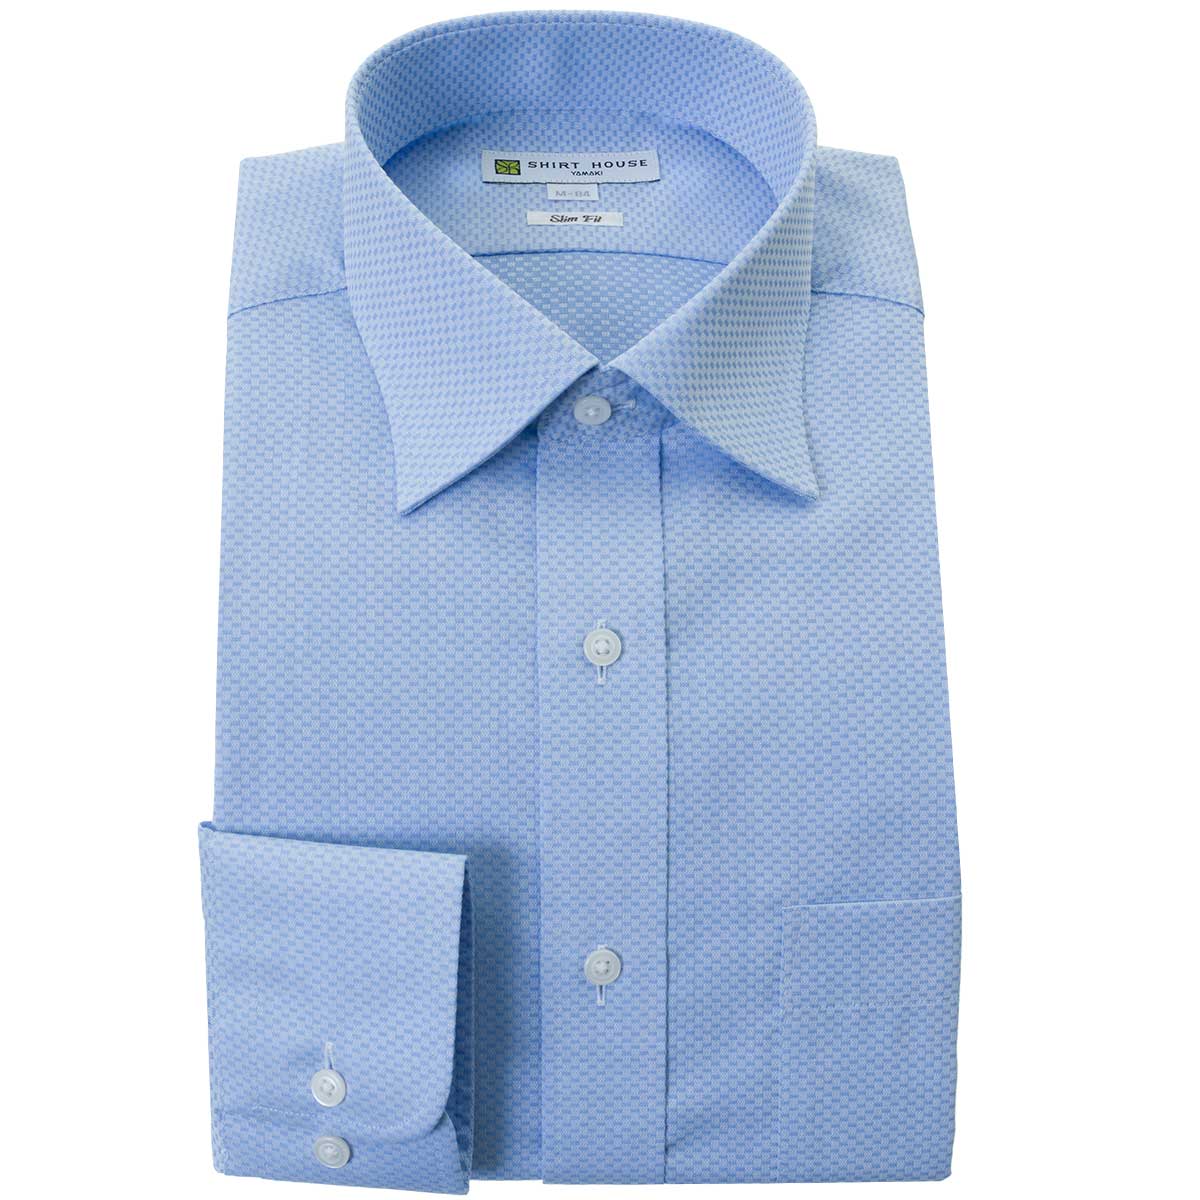 ワイシャツ 形態安定 長袖 ブルー ドビー セミワイドカラー スリムフィット 細身 シャツハウス メンズ Yシャツ 2312CL